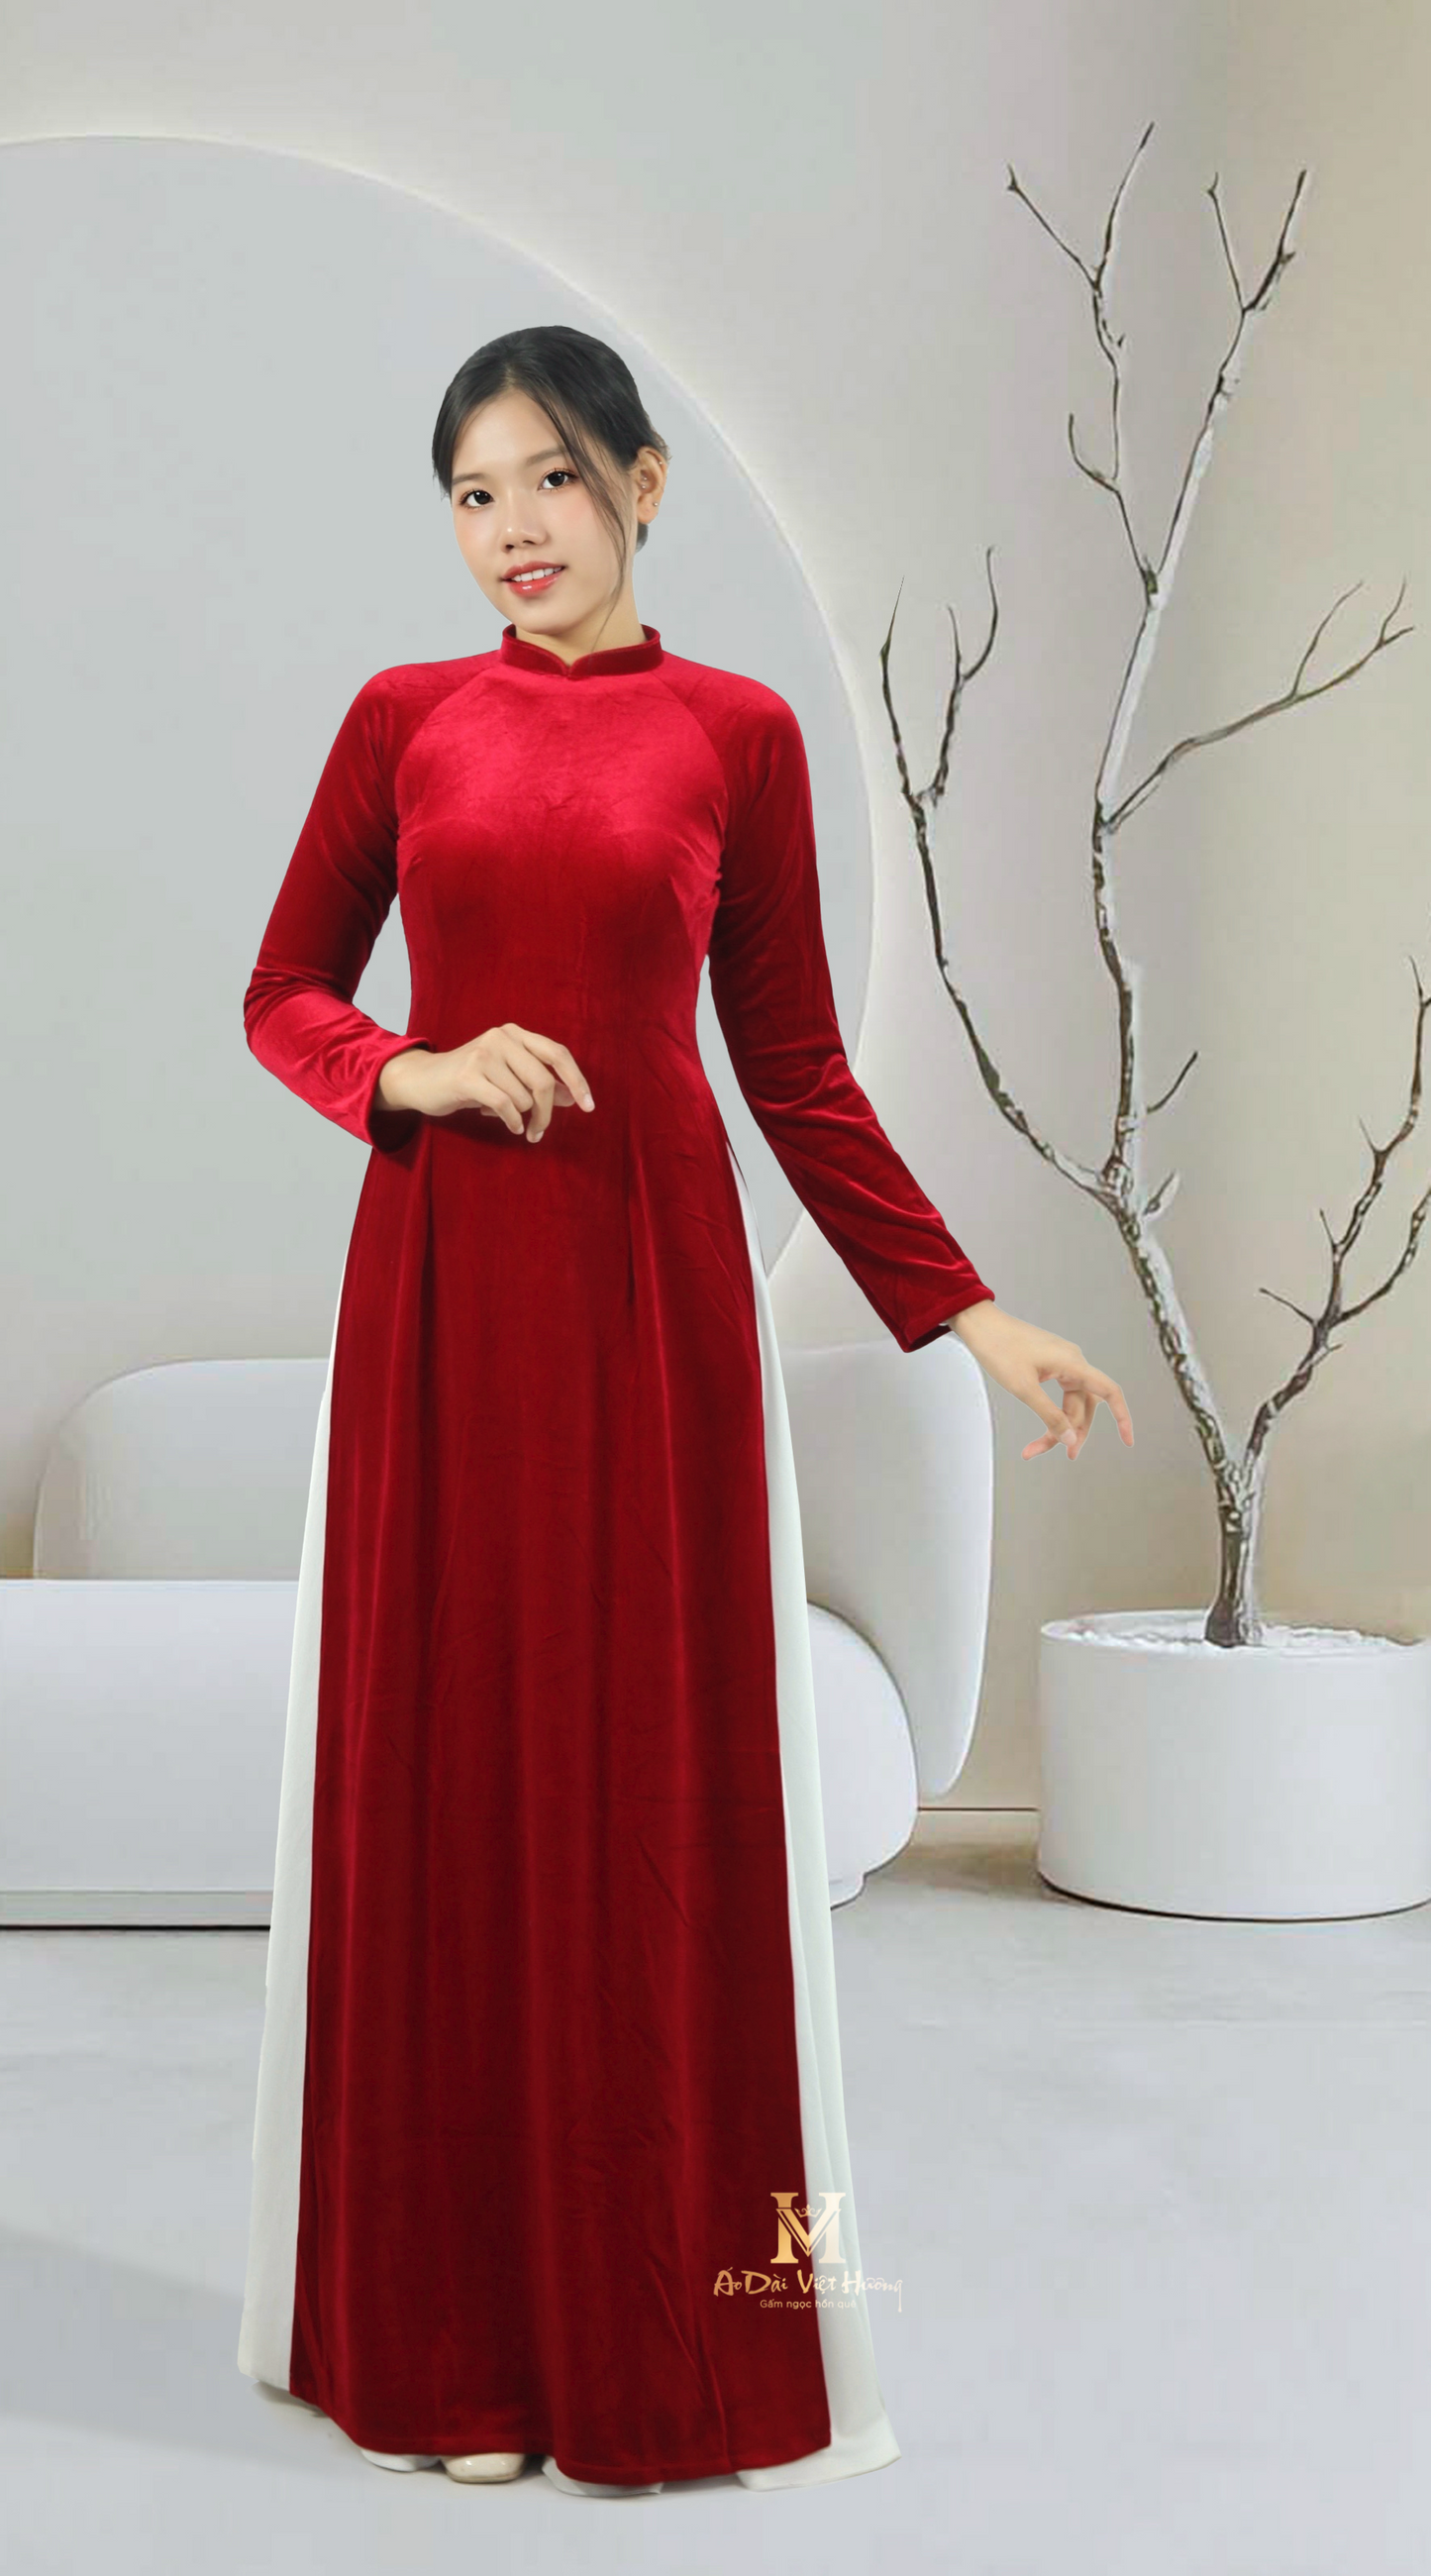 265 - Red Velvet Fabric Áo Dài (Áo Dài Nhung Đỏ Cổ 2cm)